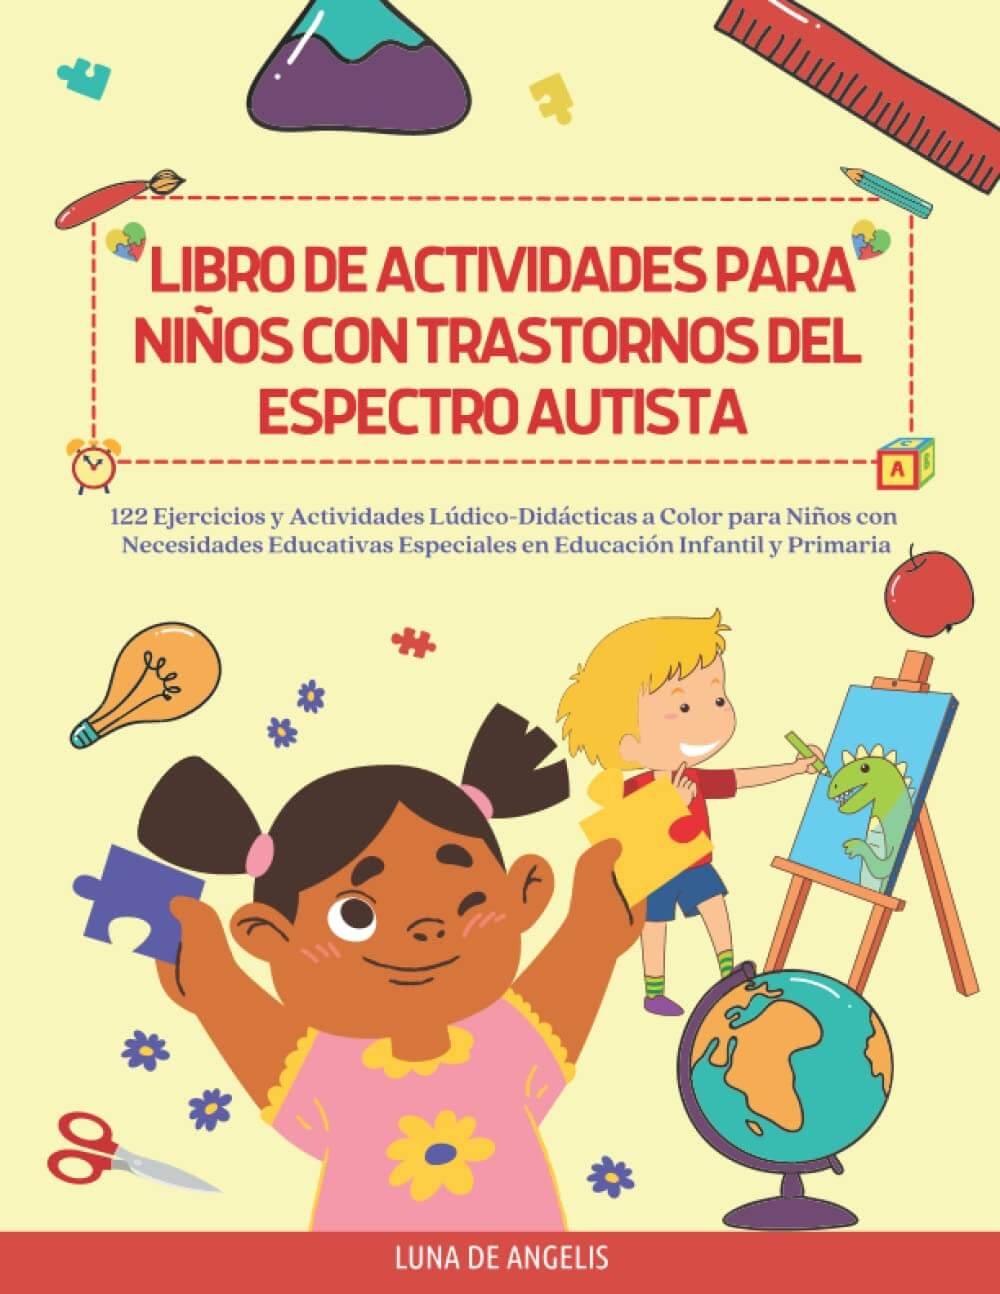 Libro de actividades para niños con trastorno del espectro autista